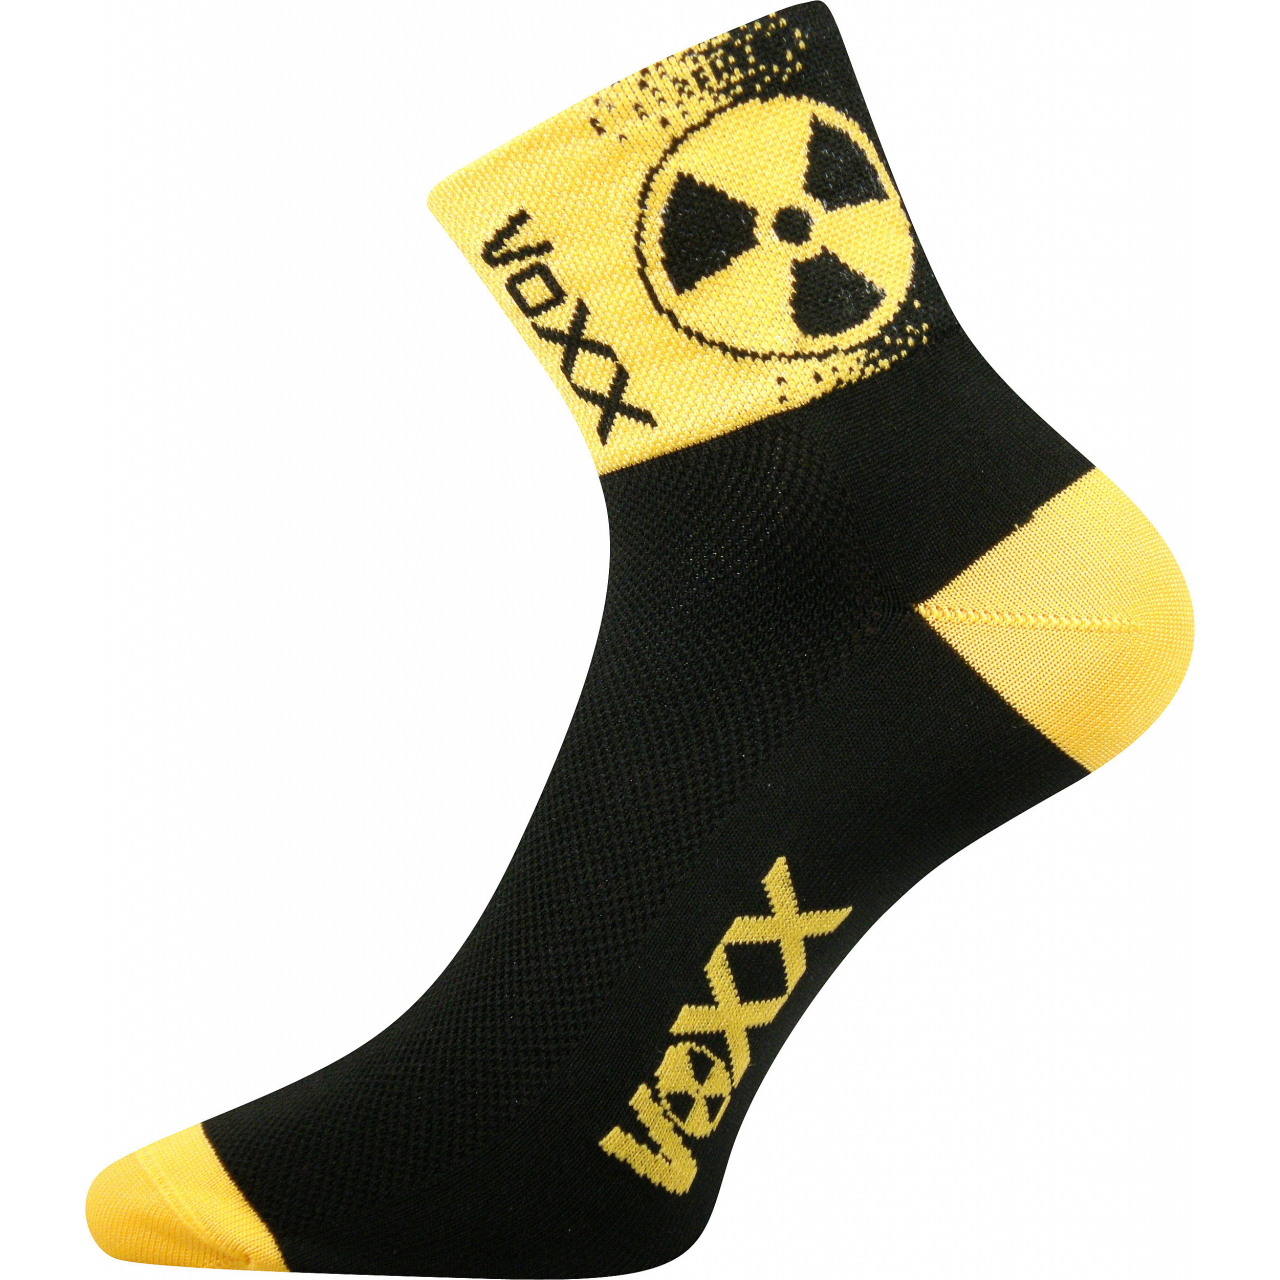 Ponožky sportovní unisex Voxx Ralf X Radiace - černé-žluté, 39-42